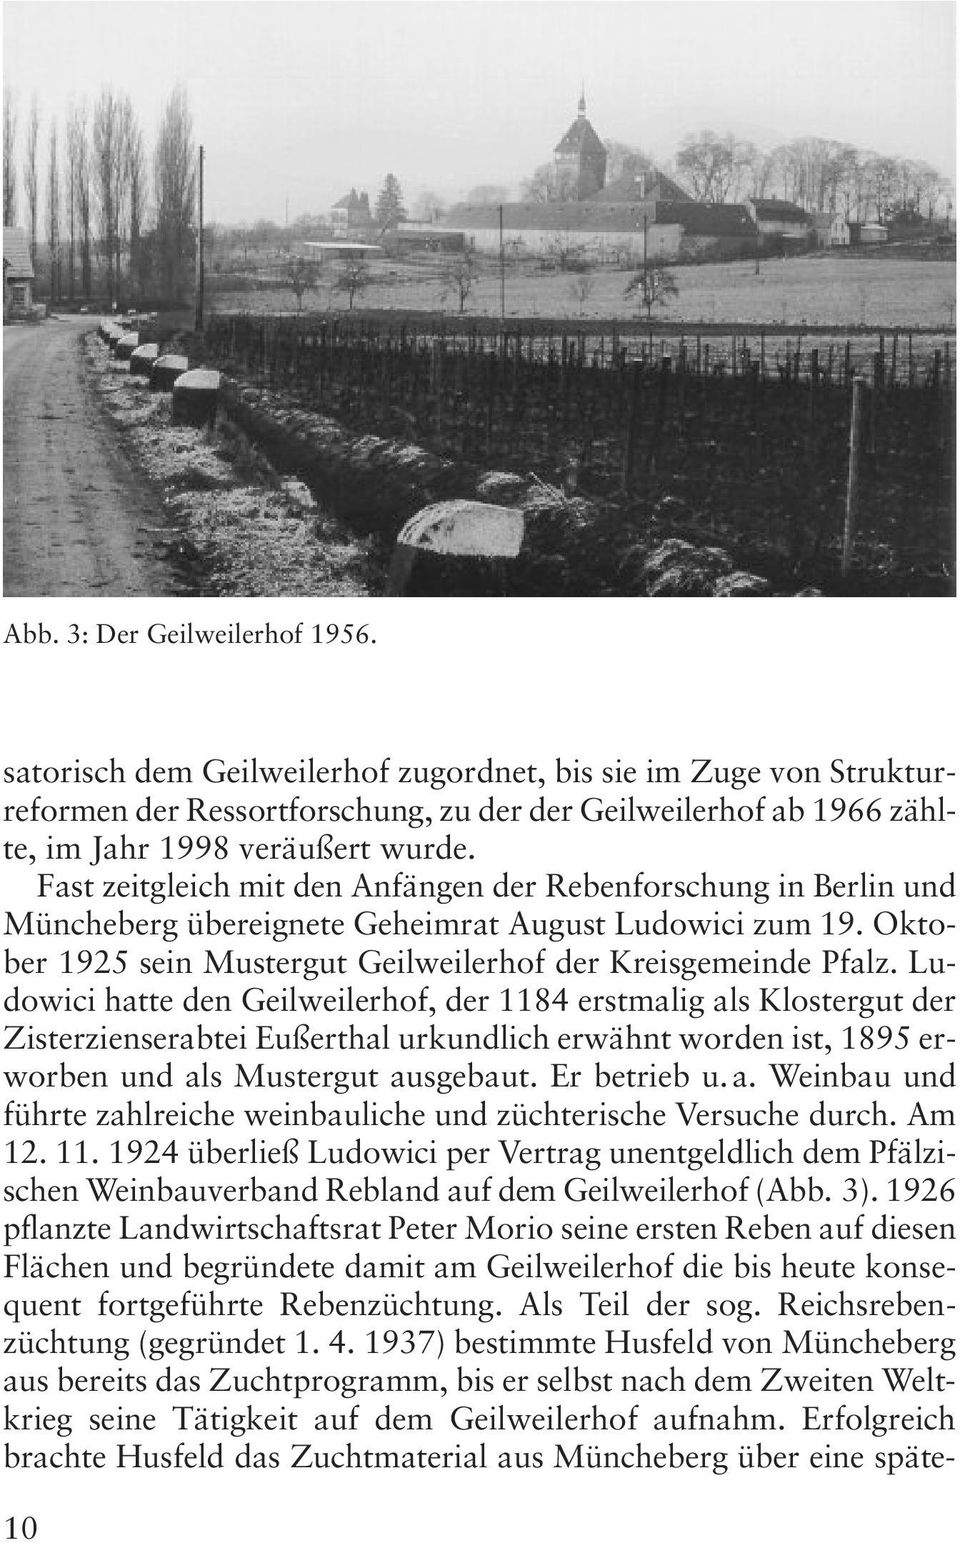 Ludowici hatte den Geilweilerhof, der 1184 erstmalig als Klostergut der Zisterzienserabtei Eußerthal urkundlich erwähnt worden ist, 1895 erworben und als Mustergut ausgebaut. Er betrieb u. a. Weinbau und führte zahlreiche weinbauliche und züchterische Versuche durch.